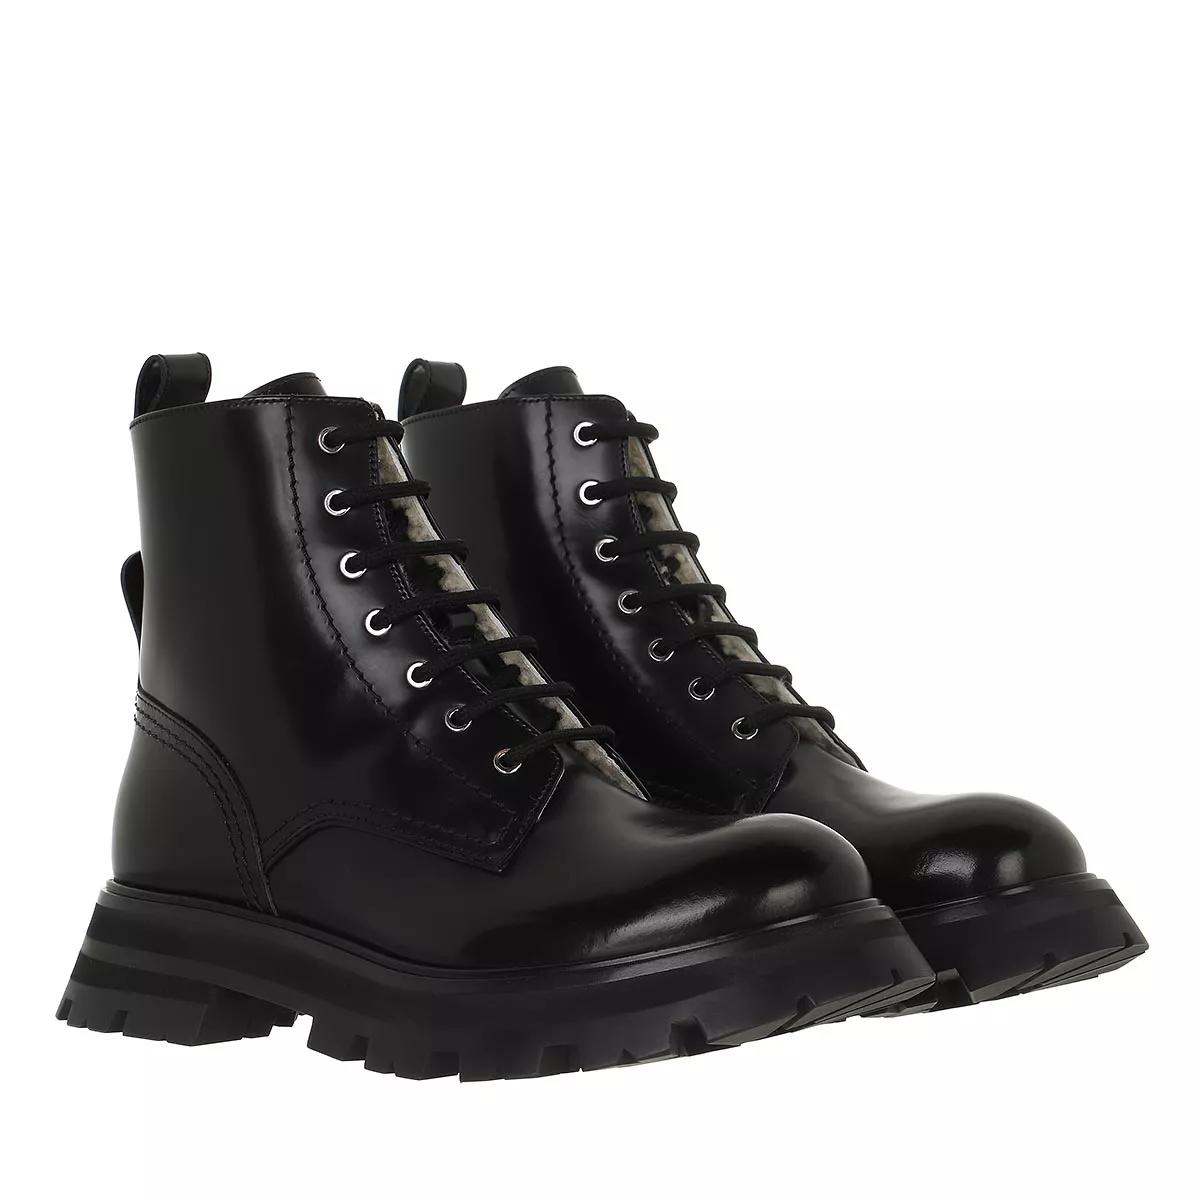 Alexander McQueen Boots & Stiefeletten - Ankle Boots Leather - Gr. 41 (EU) - in Schwarz - für Damen von alexander mcqueen